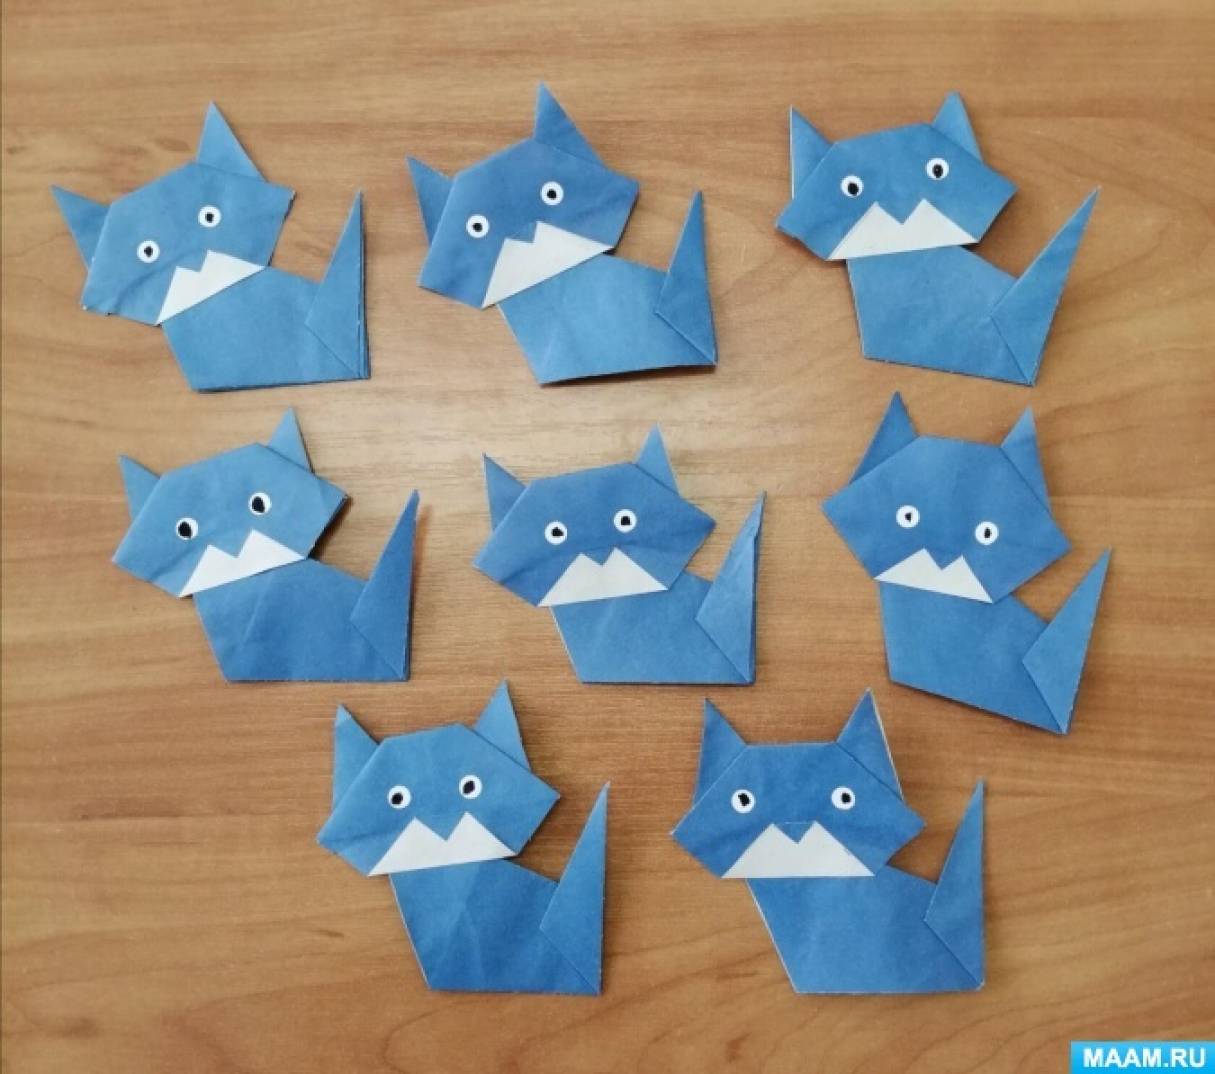 Проект по оригами «Голубая кошка»